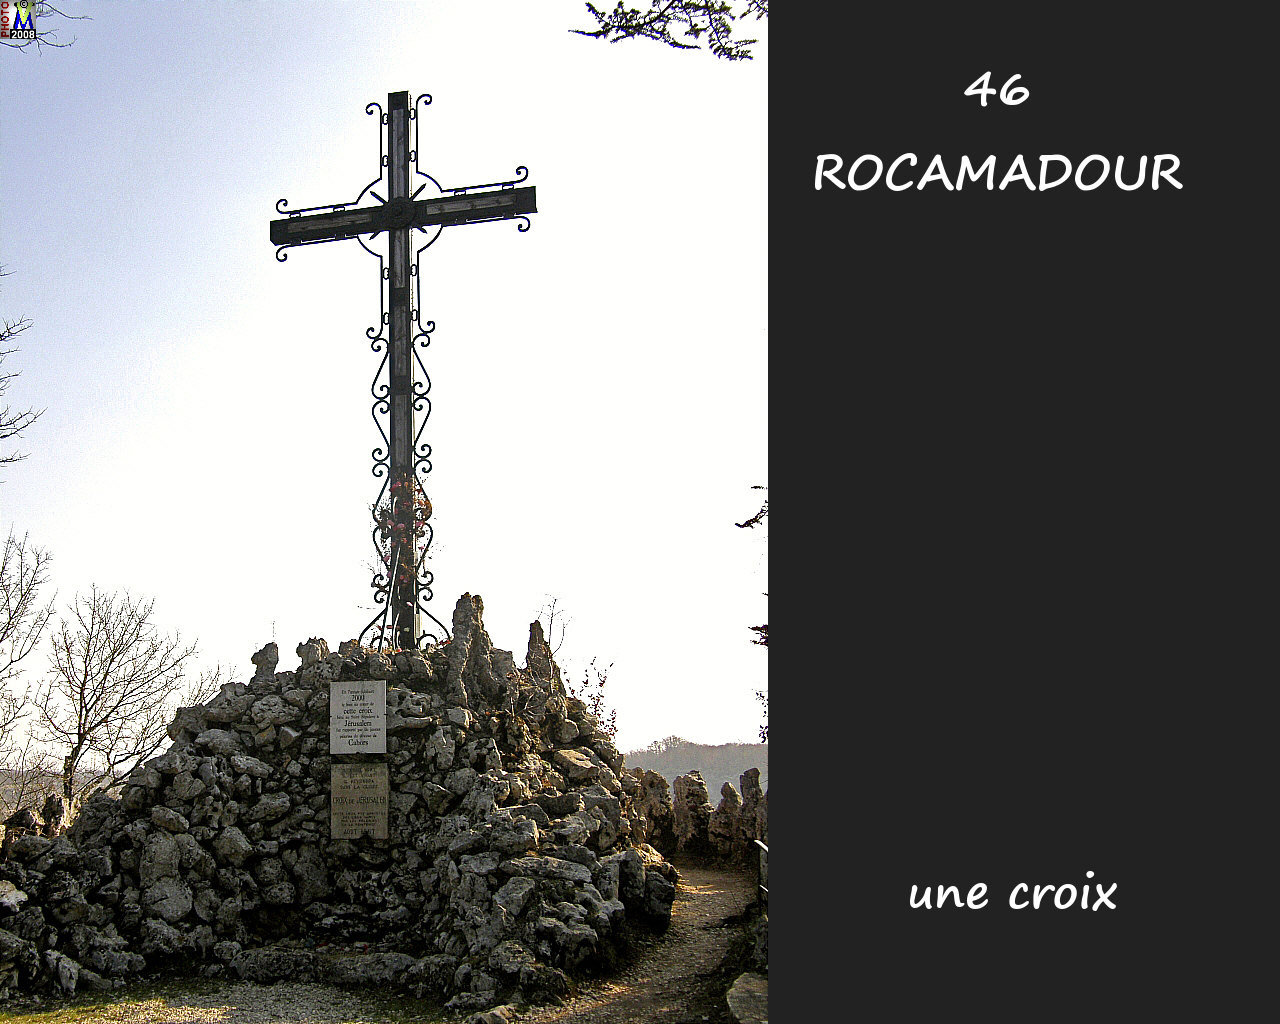 46ROCAMADOUR_croix_100.jpg